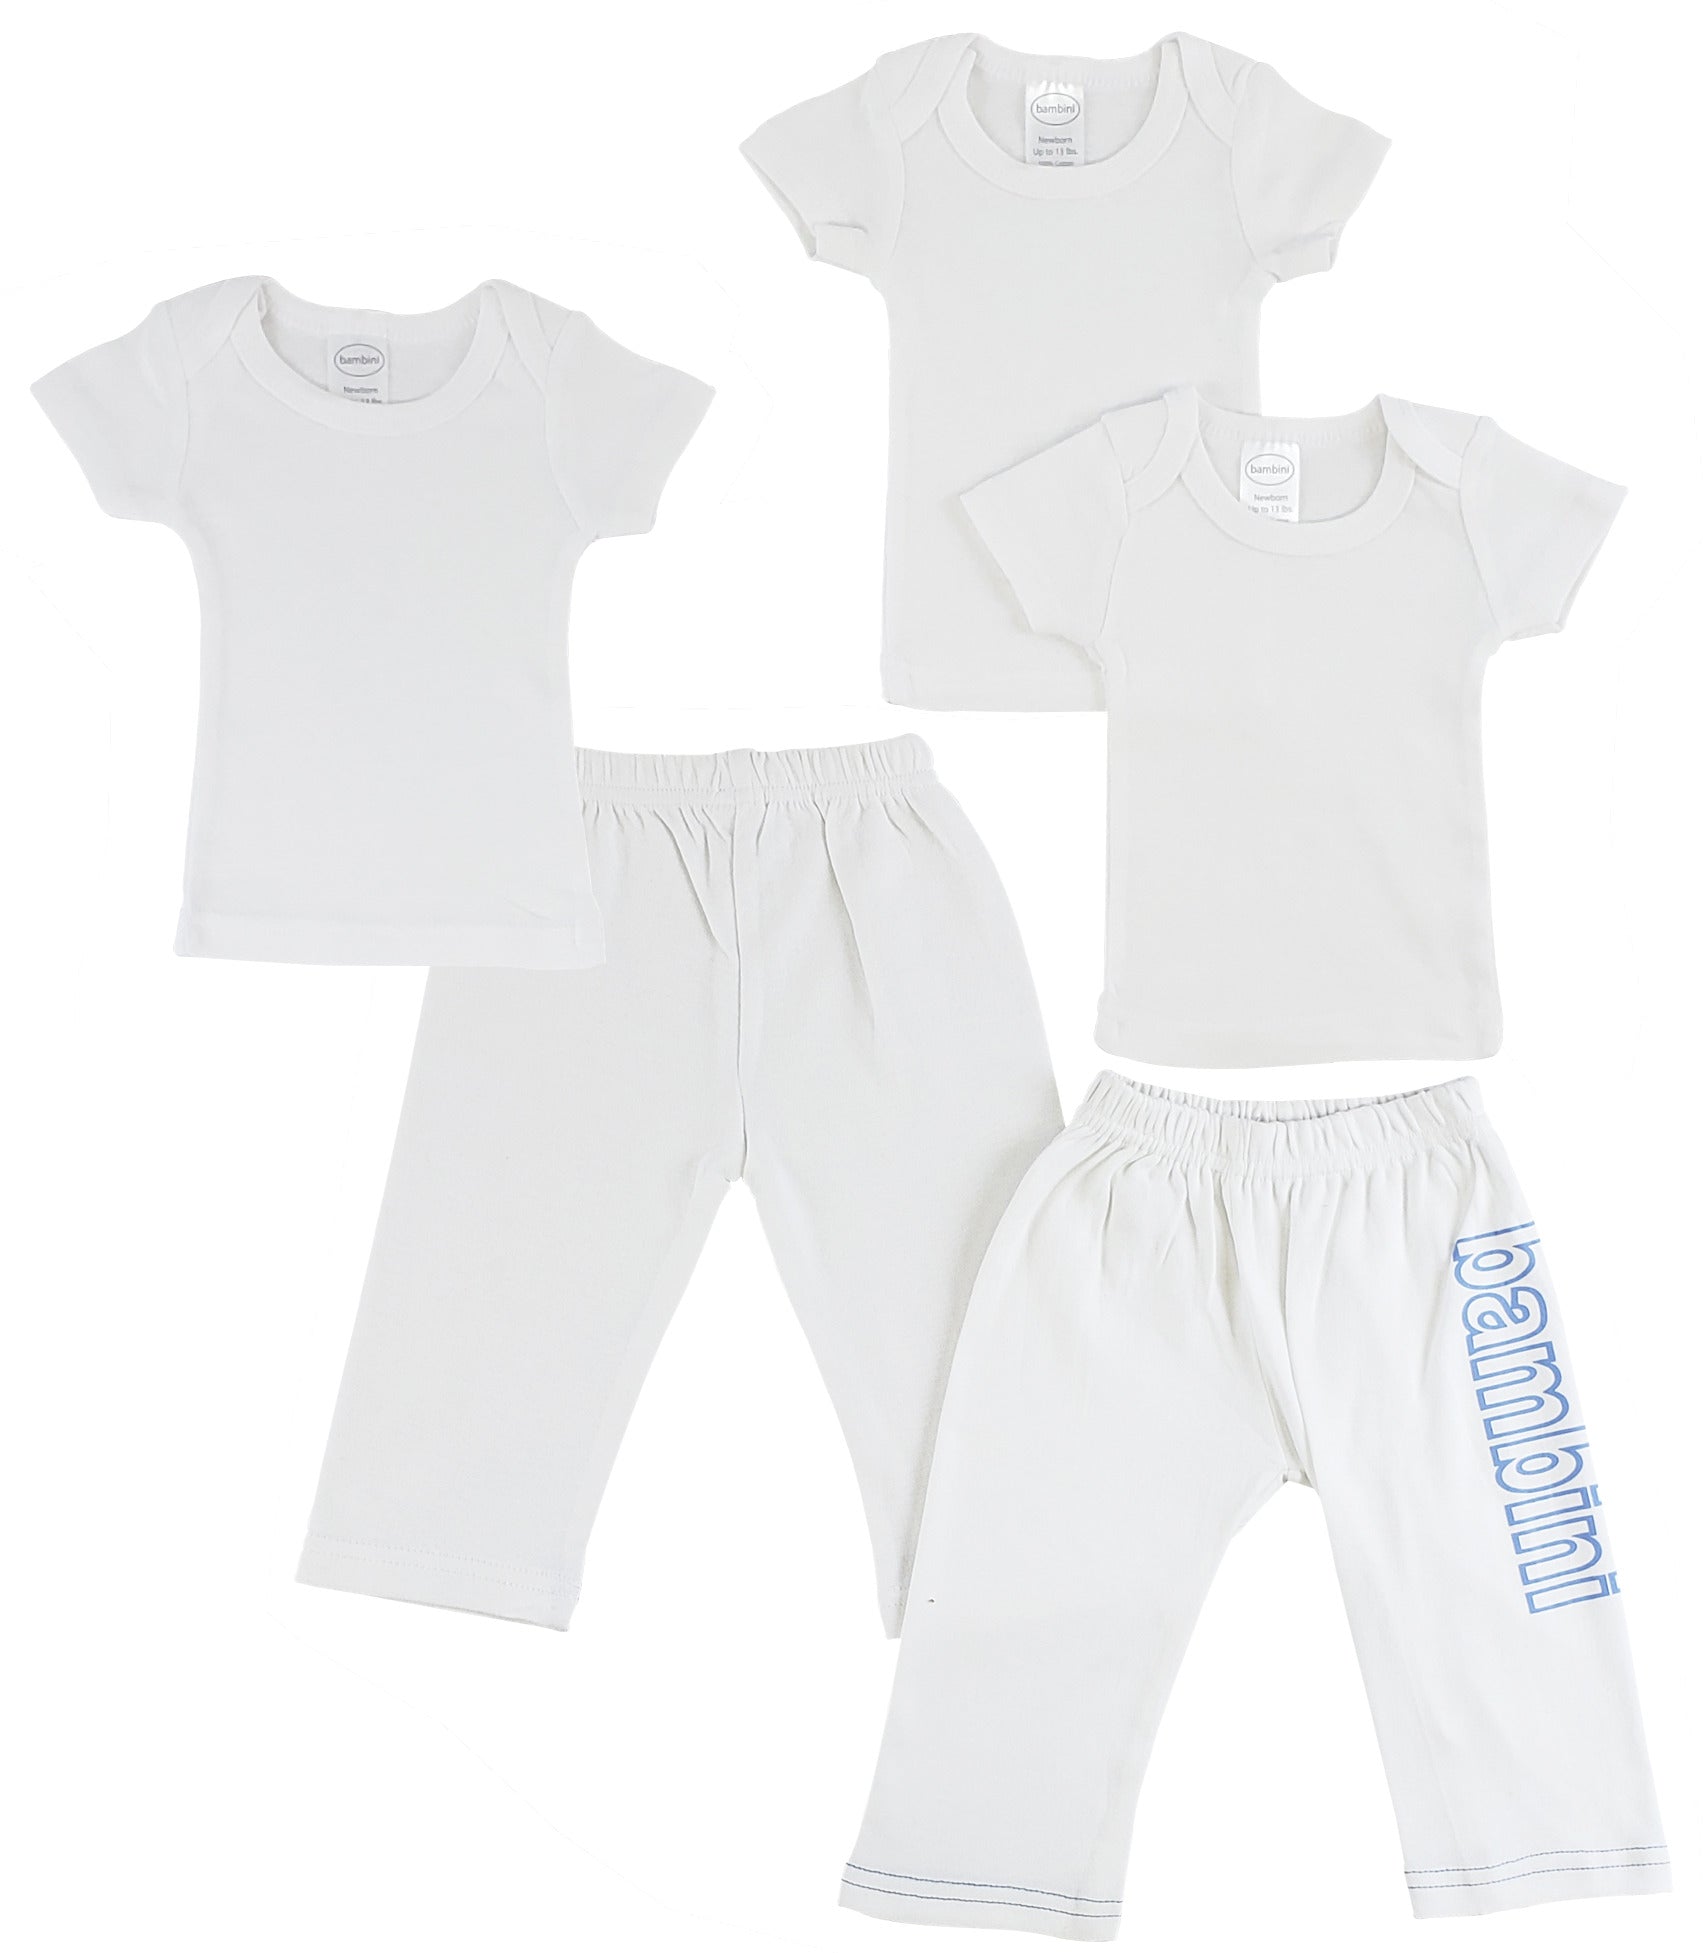 Infant T-Shirts and Track Sweatpants CS_0435